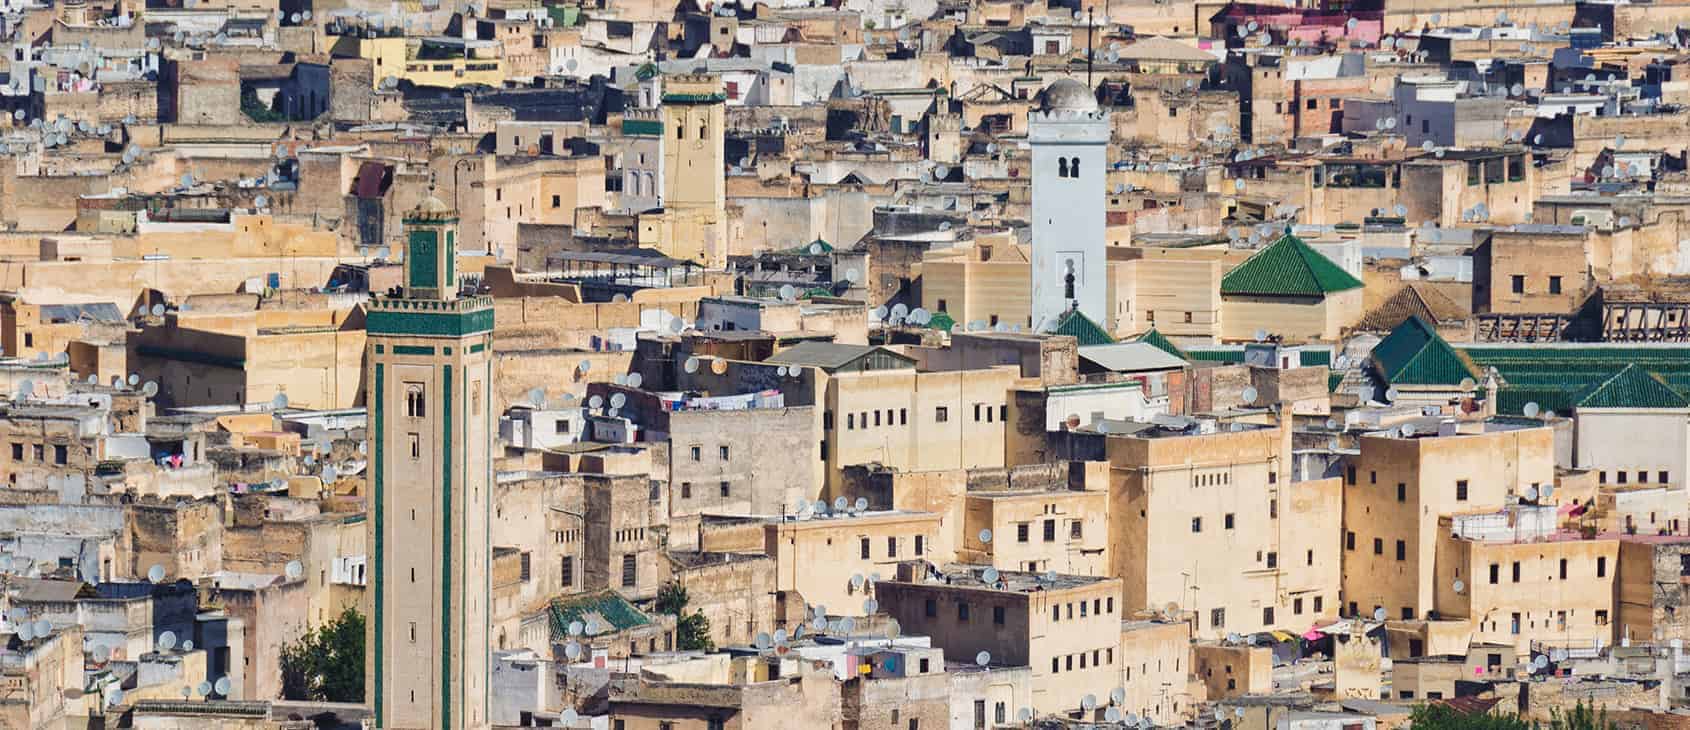 The mediaeval city of Fez